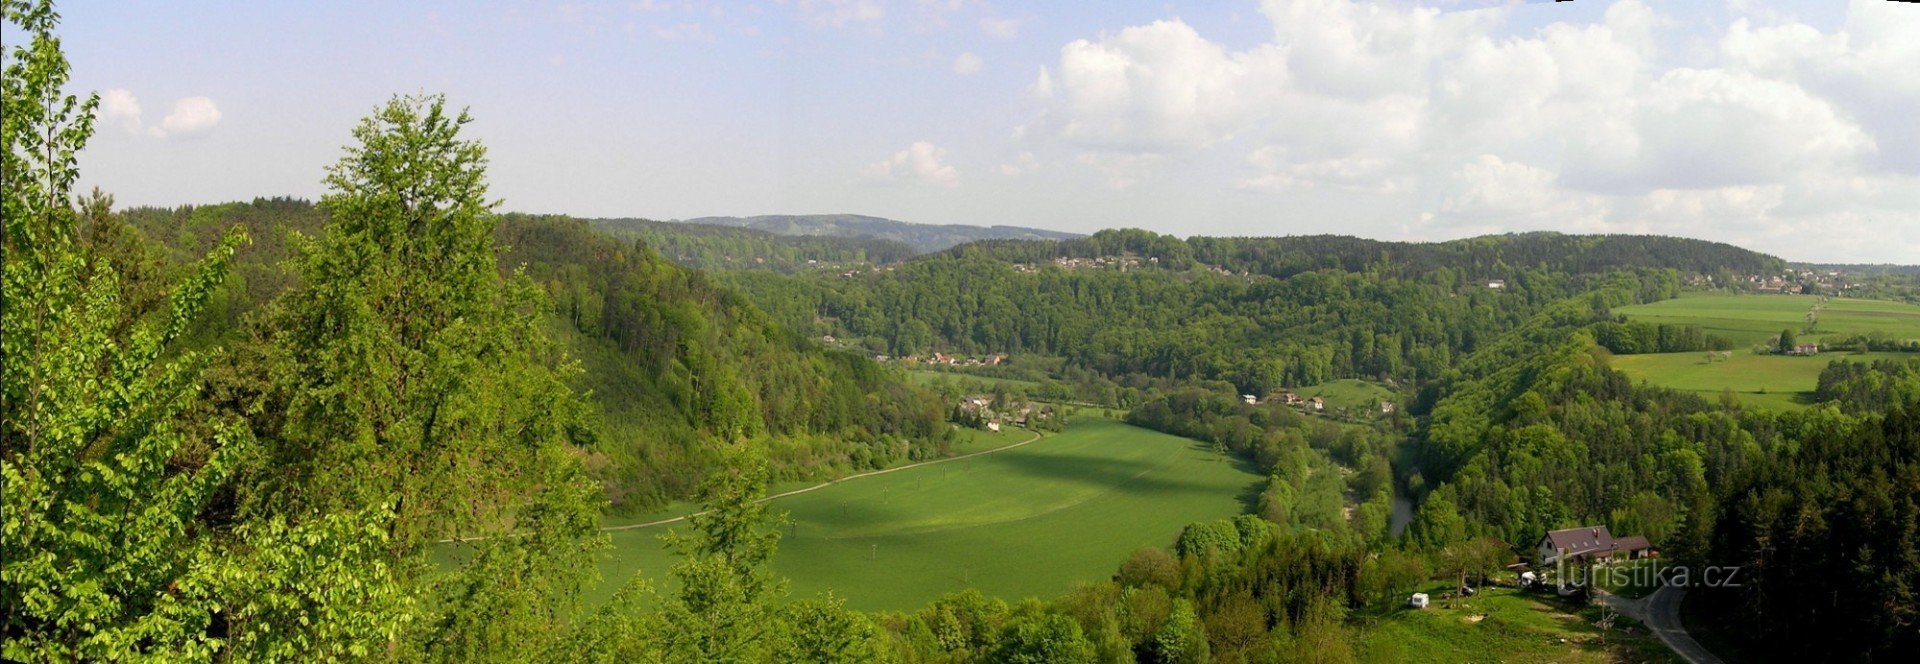 Valle de Jizera desde Zdenčina skály